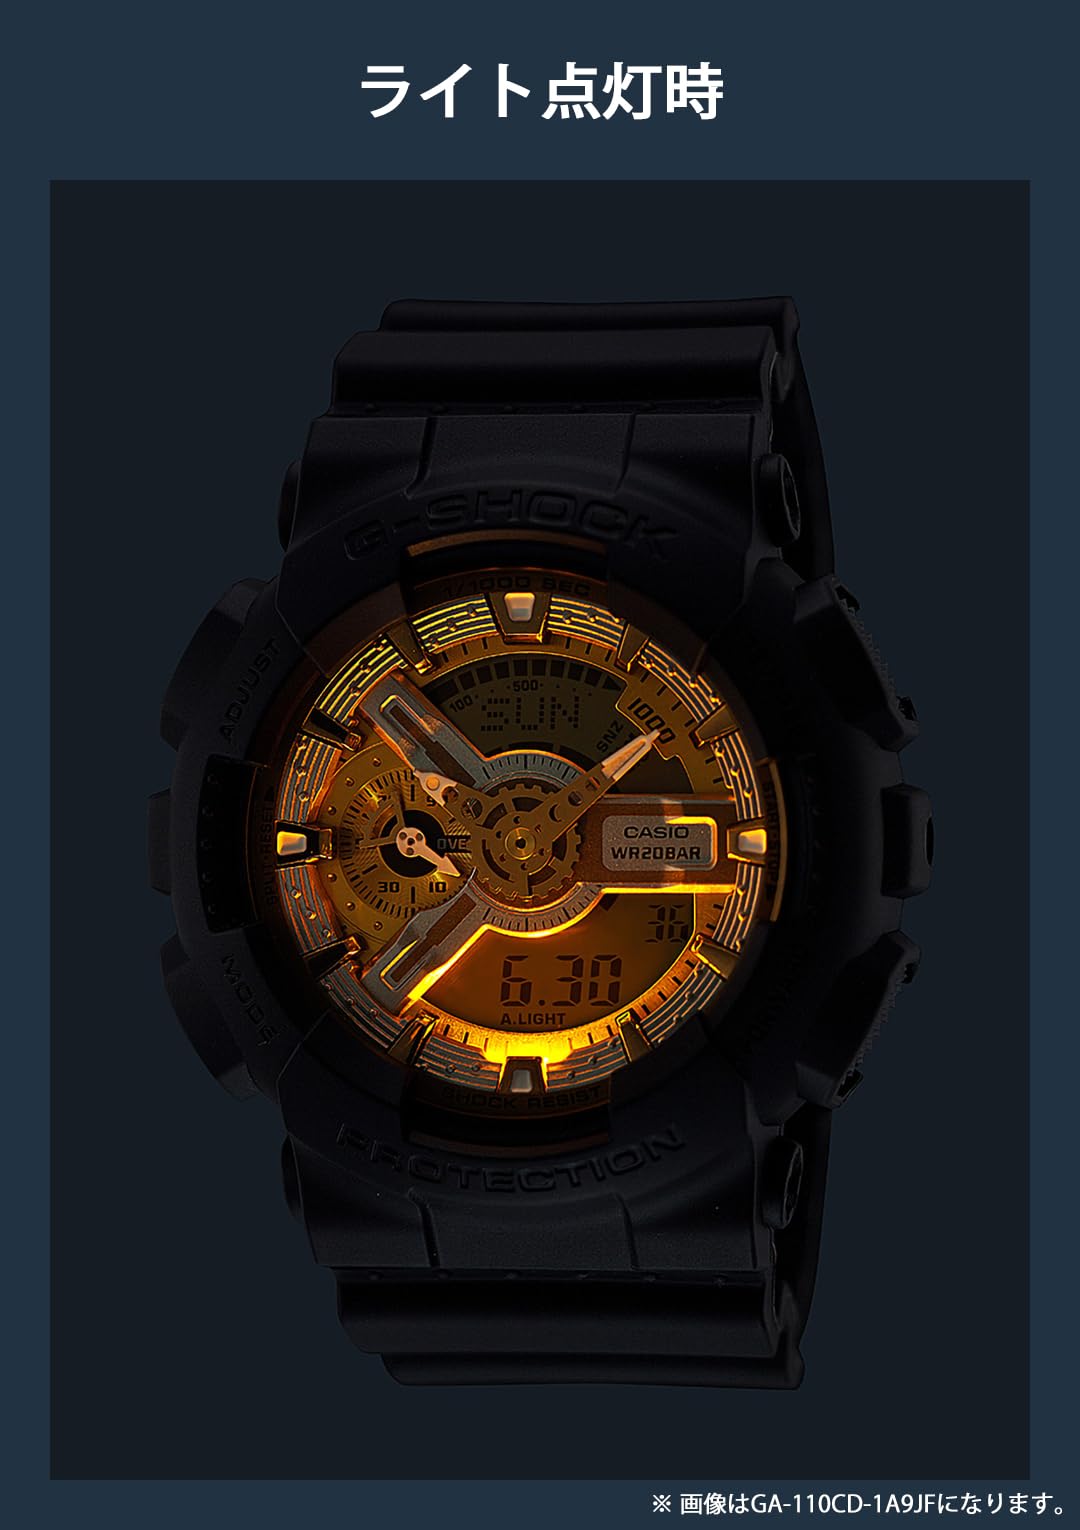 ジーショック [カシオ] 腕時計 【国内正規品】Metallic Color Dial Series GA-110CD-1A2JF メンズ ブラック - BanzaiHobby